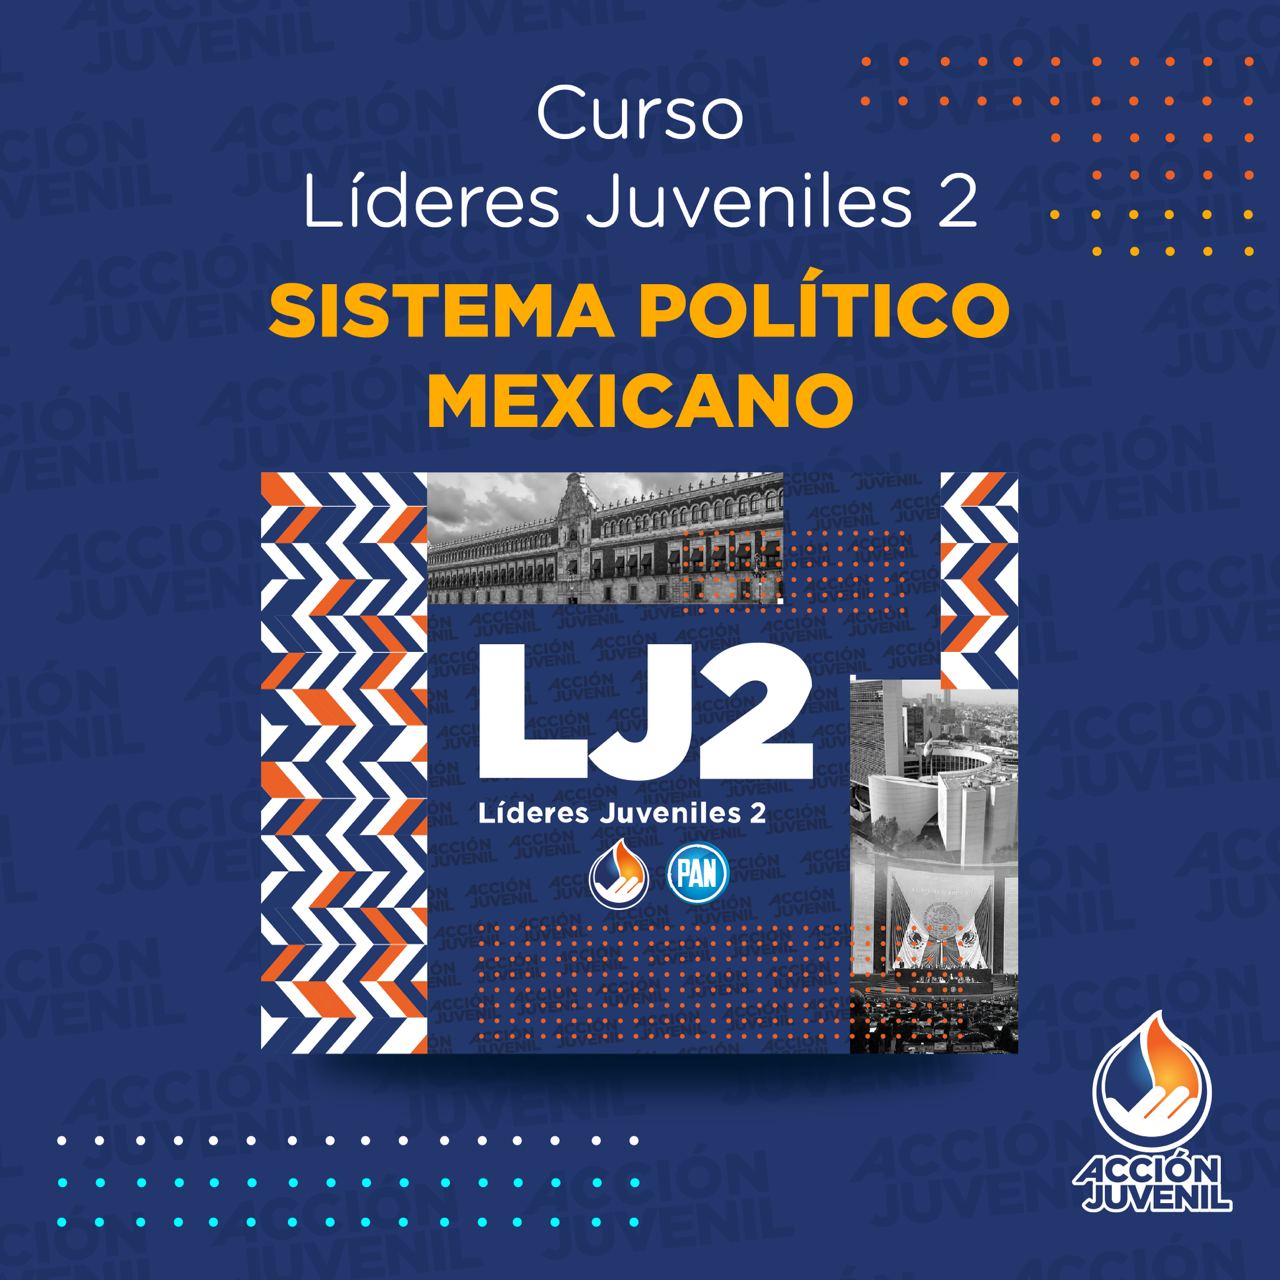 Curso Líderes Juveniles 2 Sistema Político Mexicano Pedro Escobedo, QRO 03/12/23